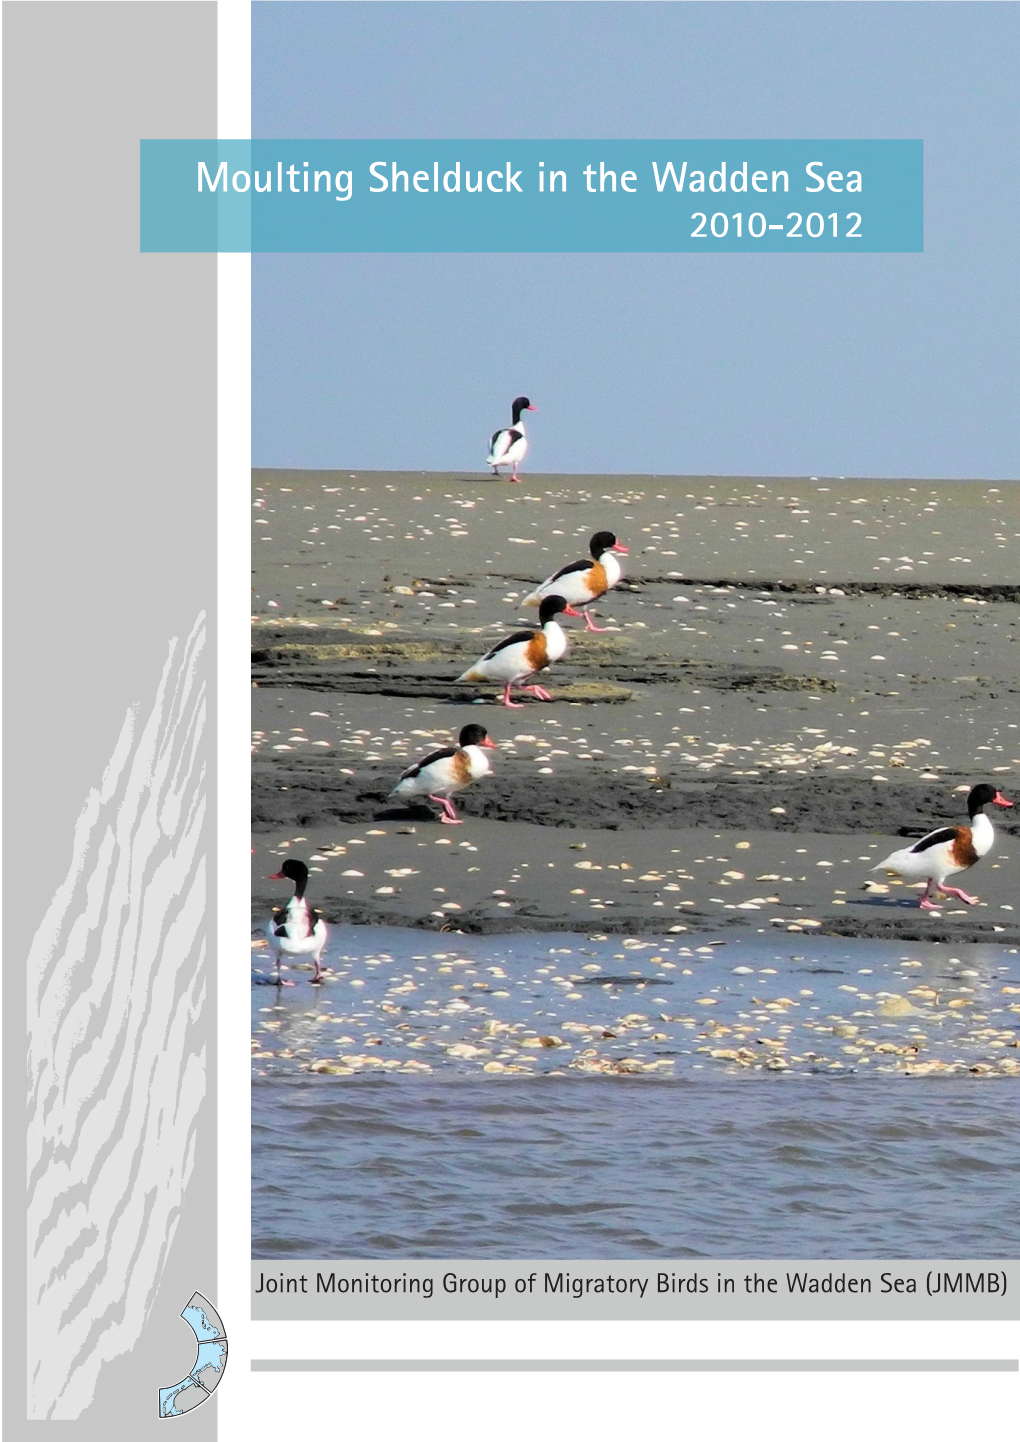 Moulting Shelduck in the Wadden Sea 2010-2012